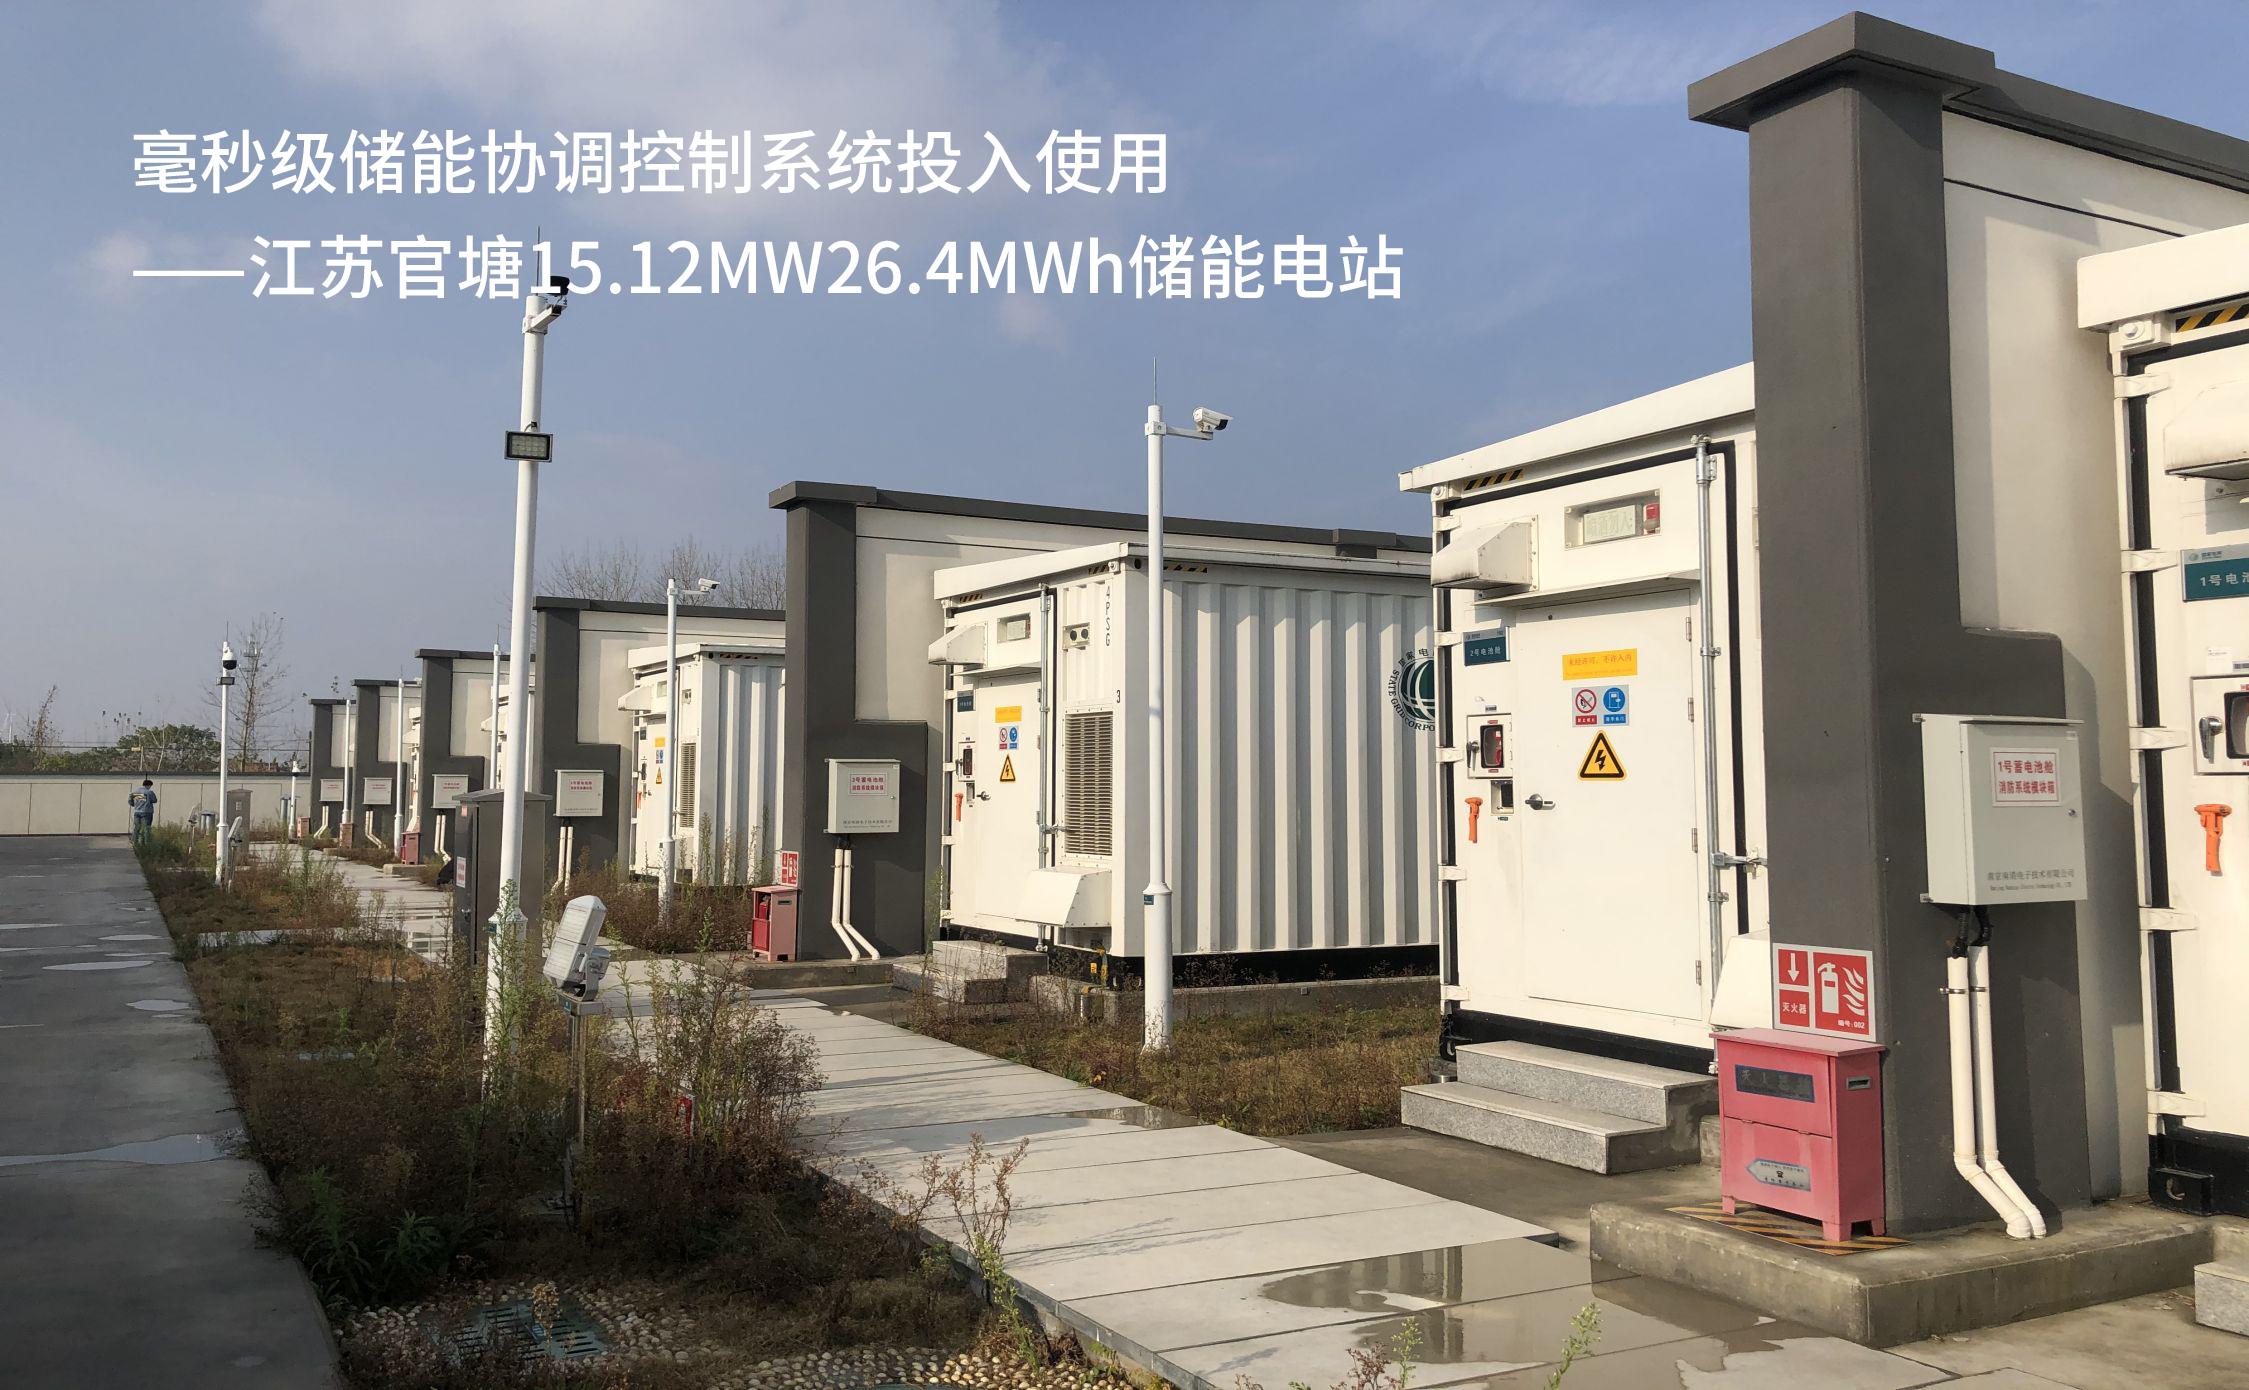 14 毫秒级储能协调控制系统投入使用——江苏官塘15.12MW26.4MWh储能电站.jpg